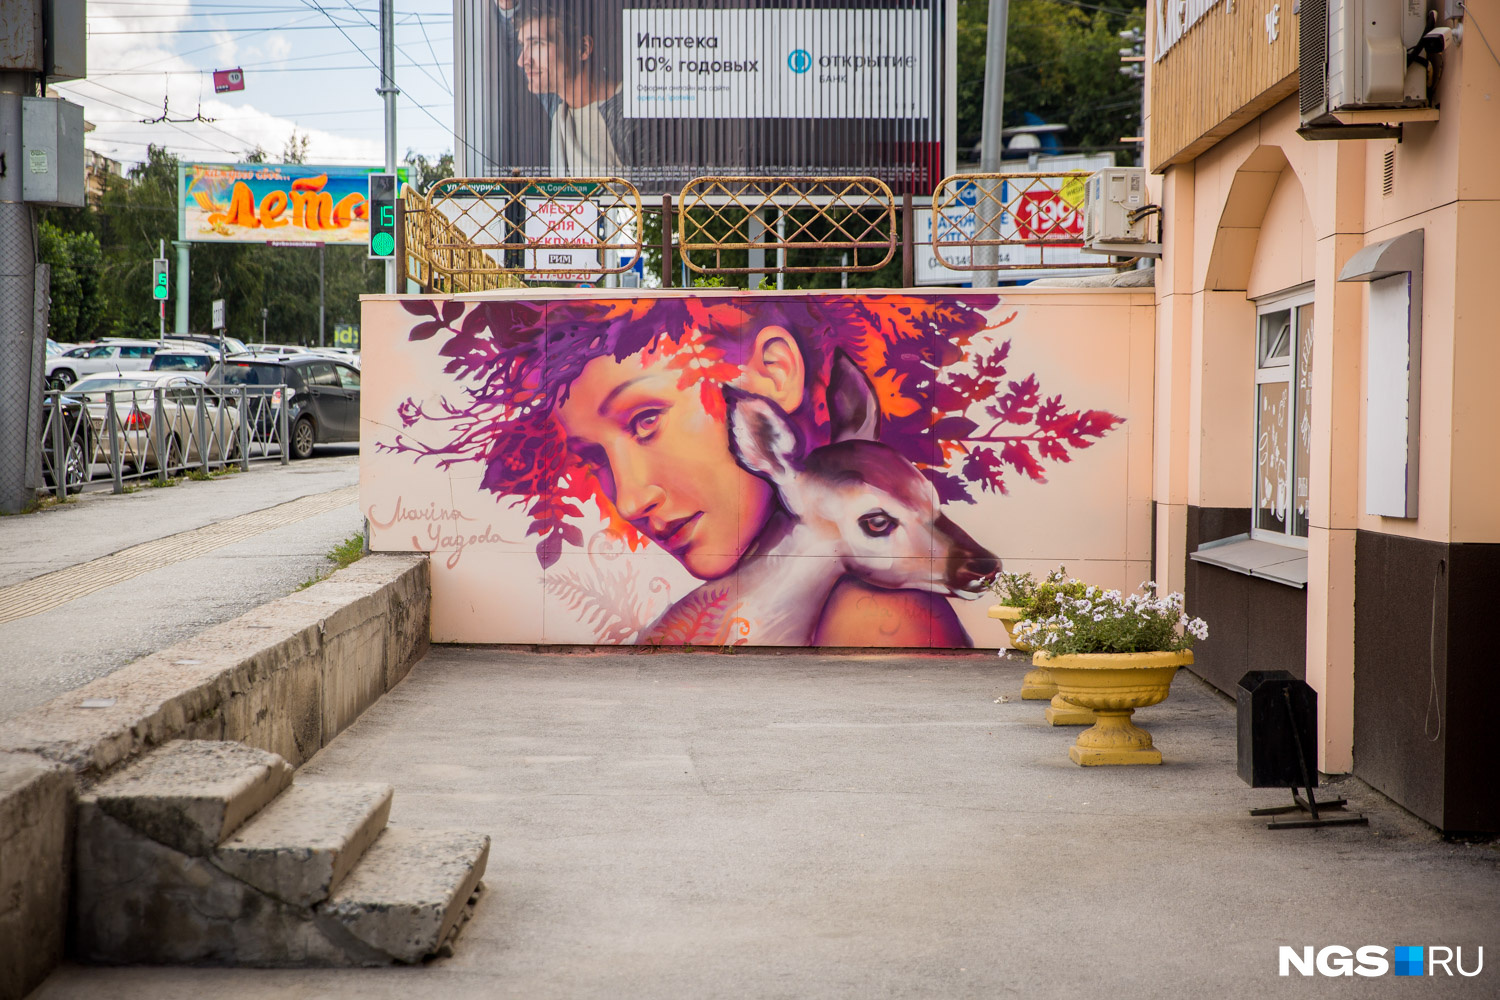 Такие граффити украшают стену по соседству с девушкой-совой. Большинство героинь Марины — абстрактные персонажи, но эта картина — портрет хореографа Дарьи Атрашкевич из театра танца Exordium